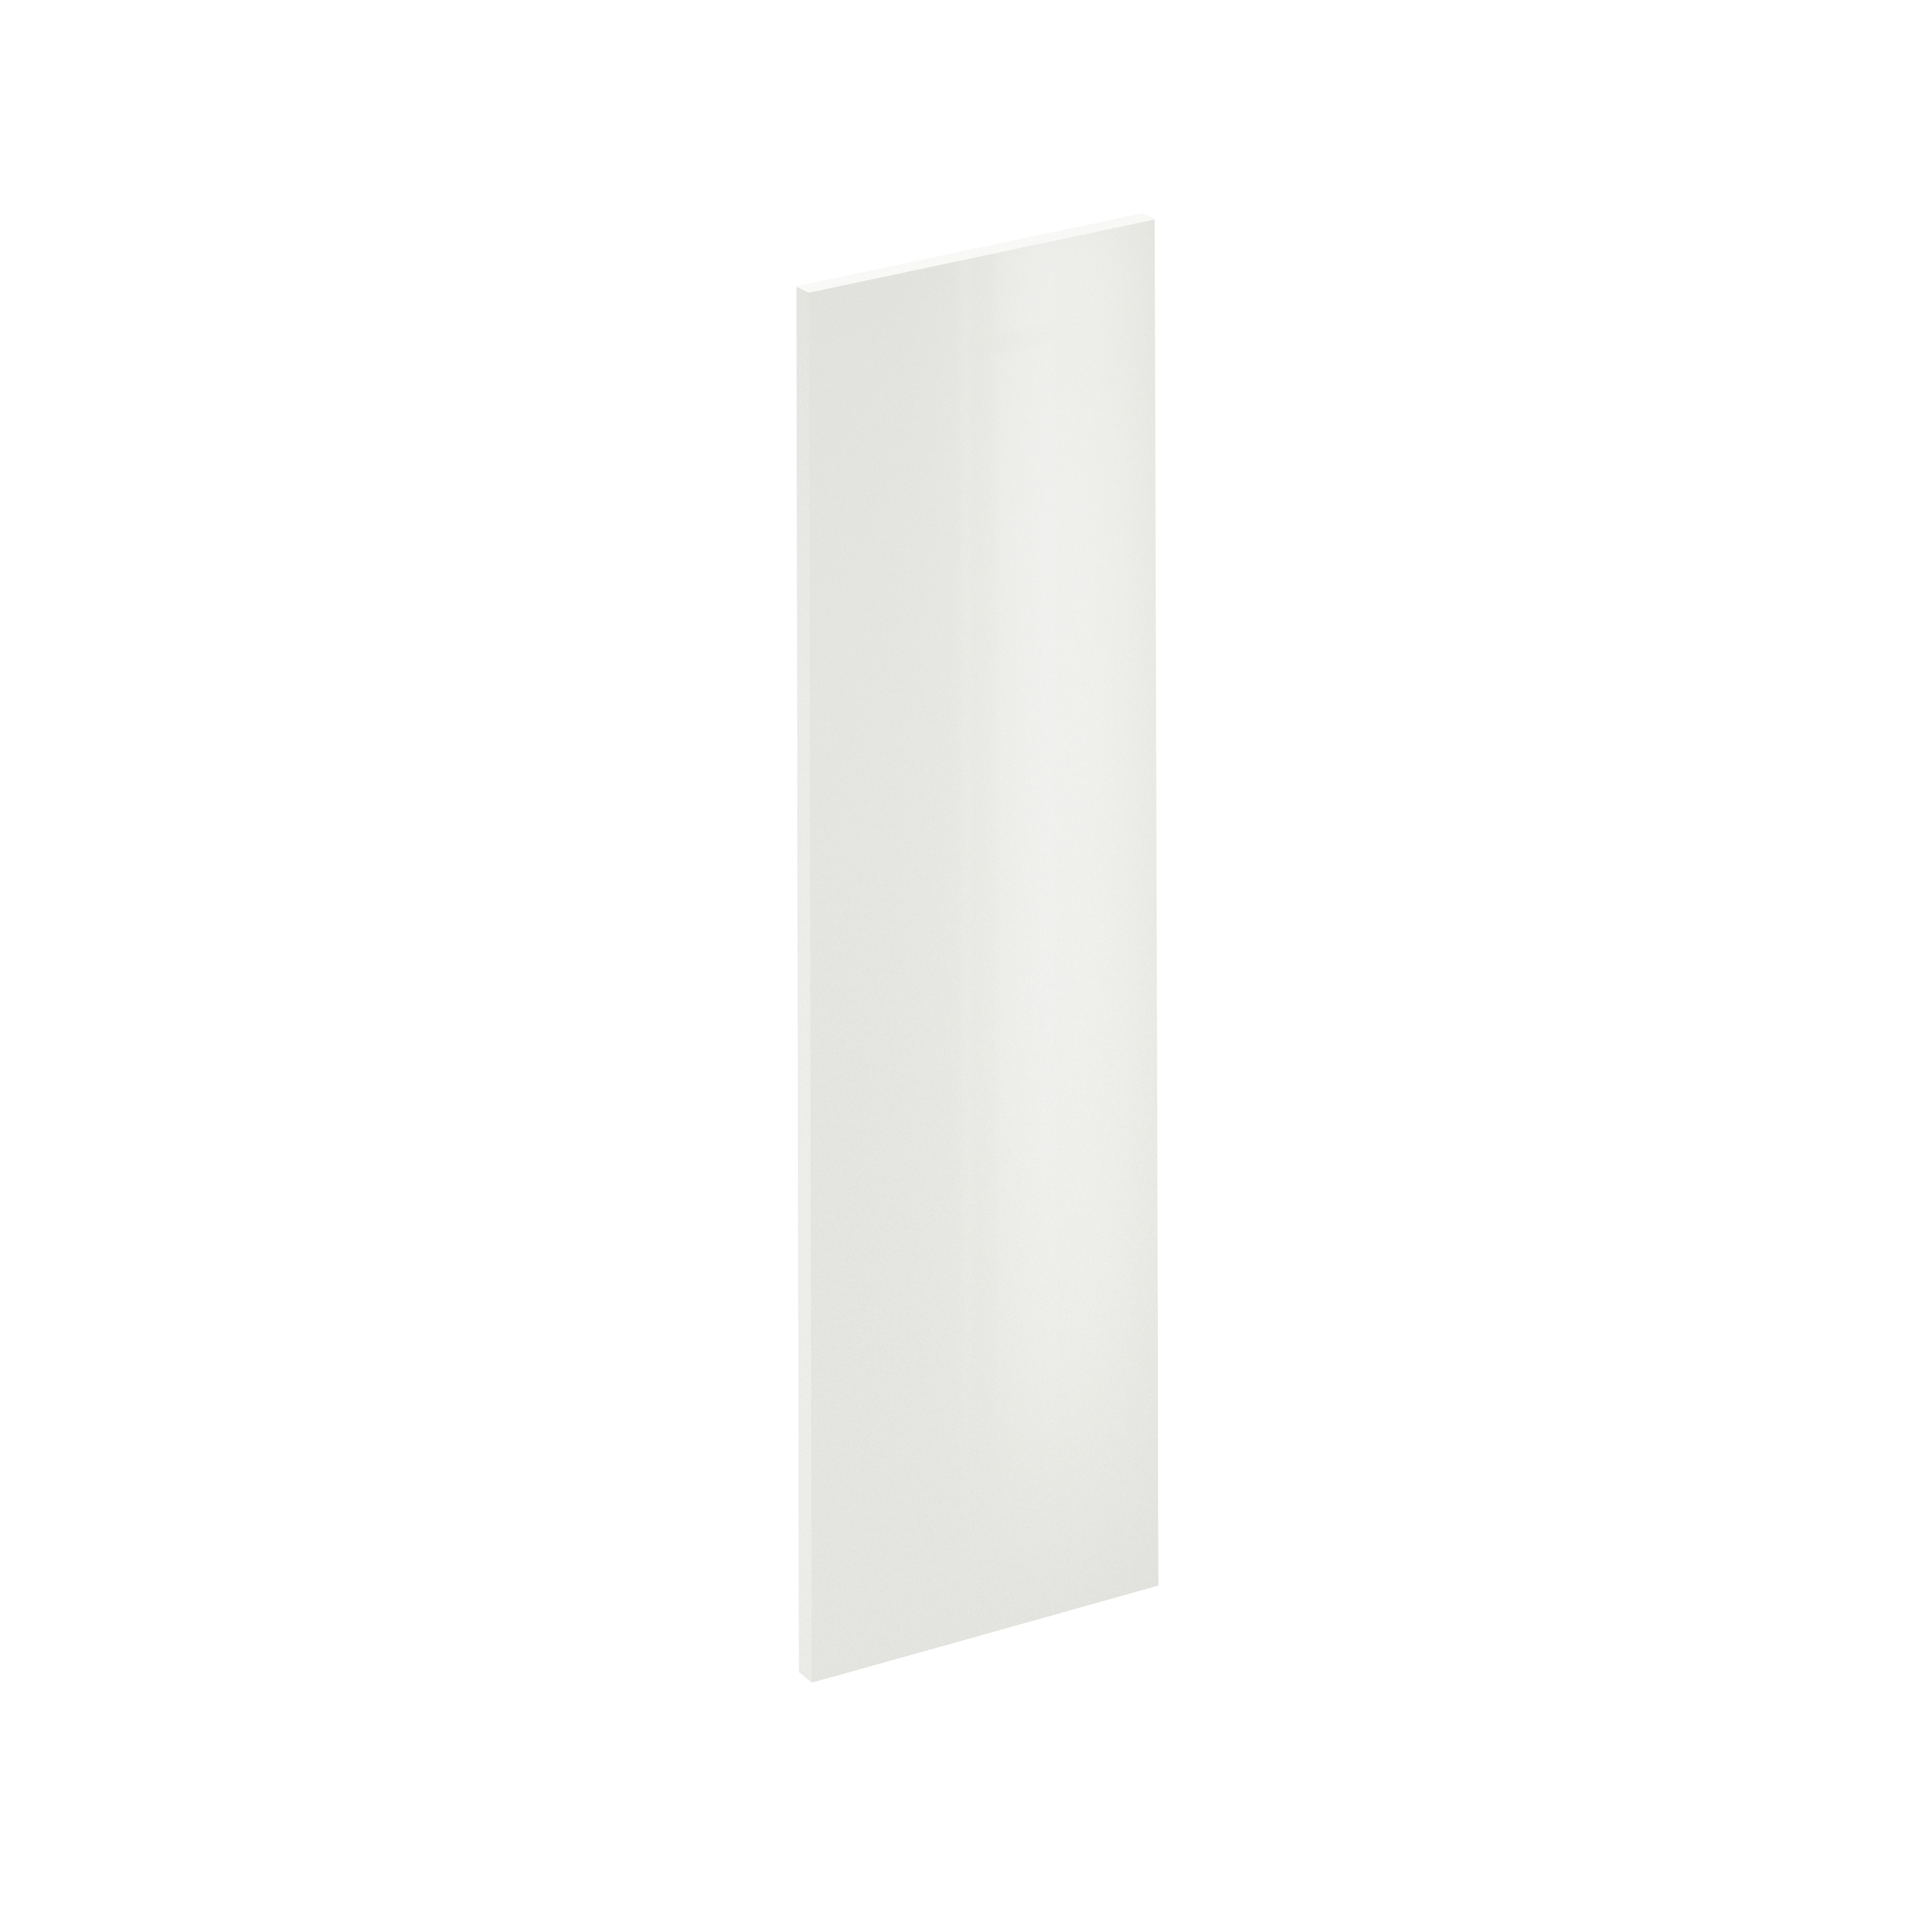 Puerta para mueble de cocina sevilla blanco brillo h 102.4 x l 30 cm